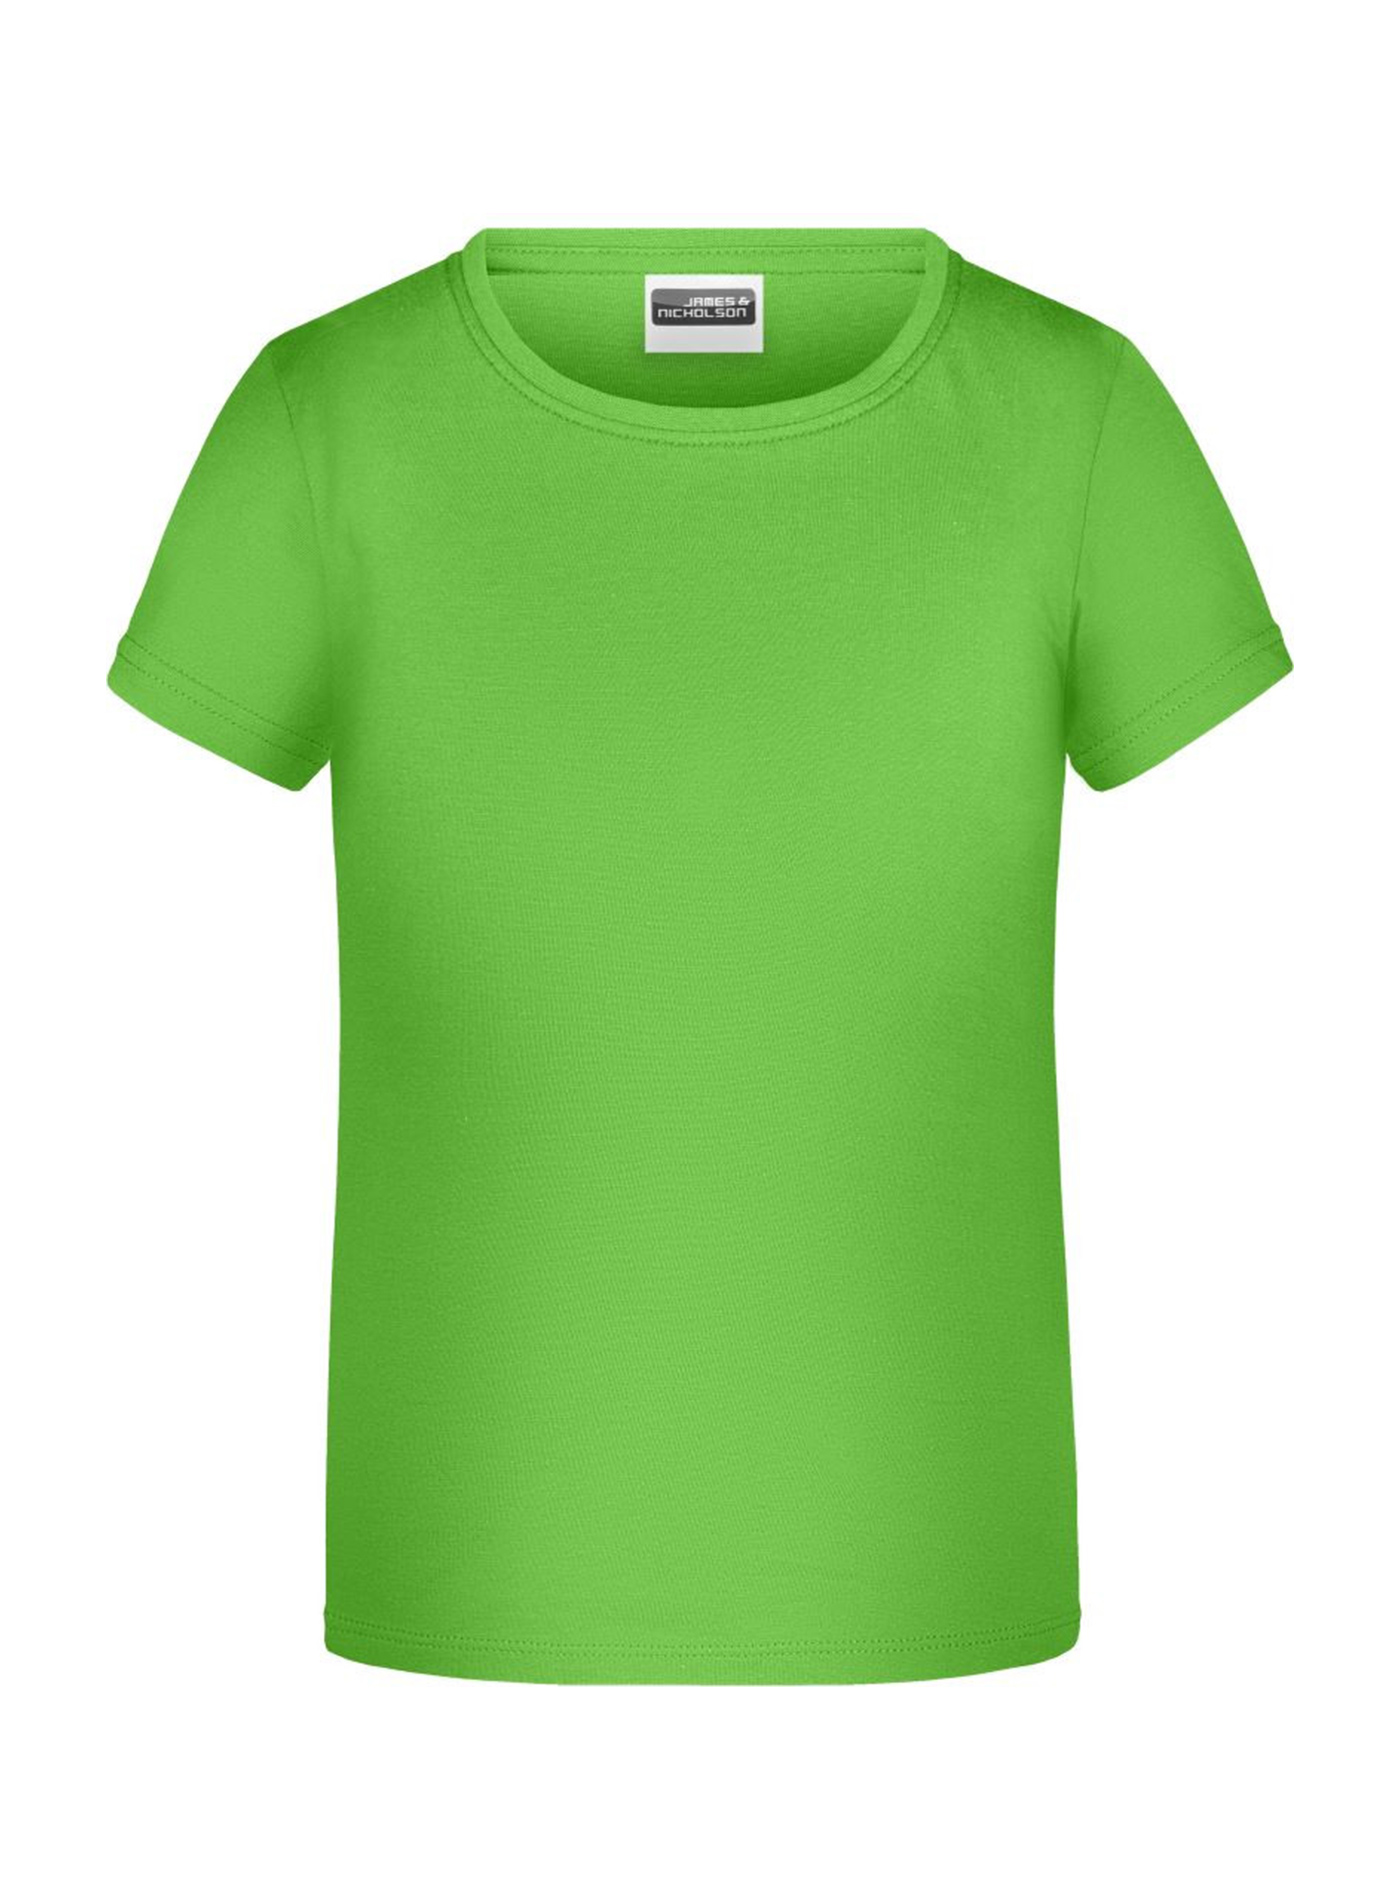 Dívčí tričko James & Nicholson - Neonová zelená S